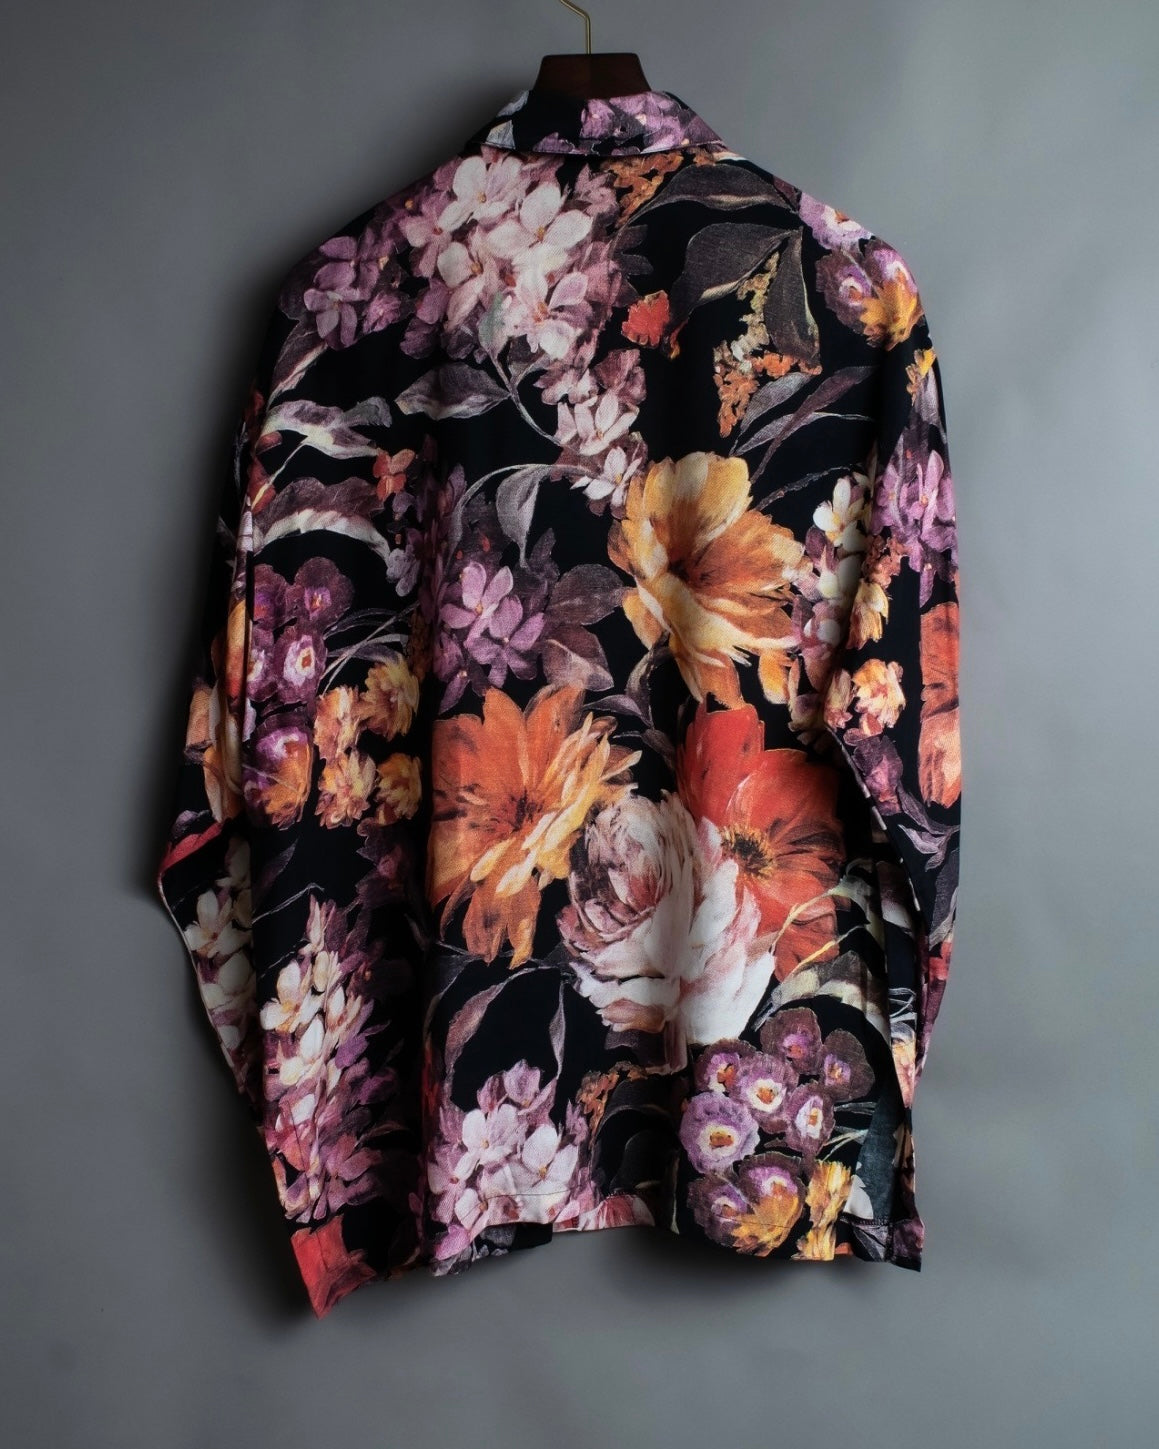 flower pattern shirt